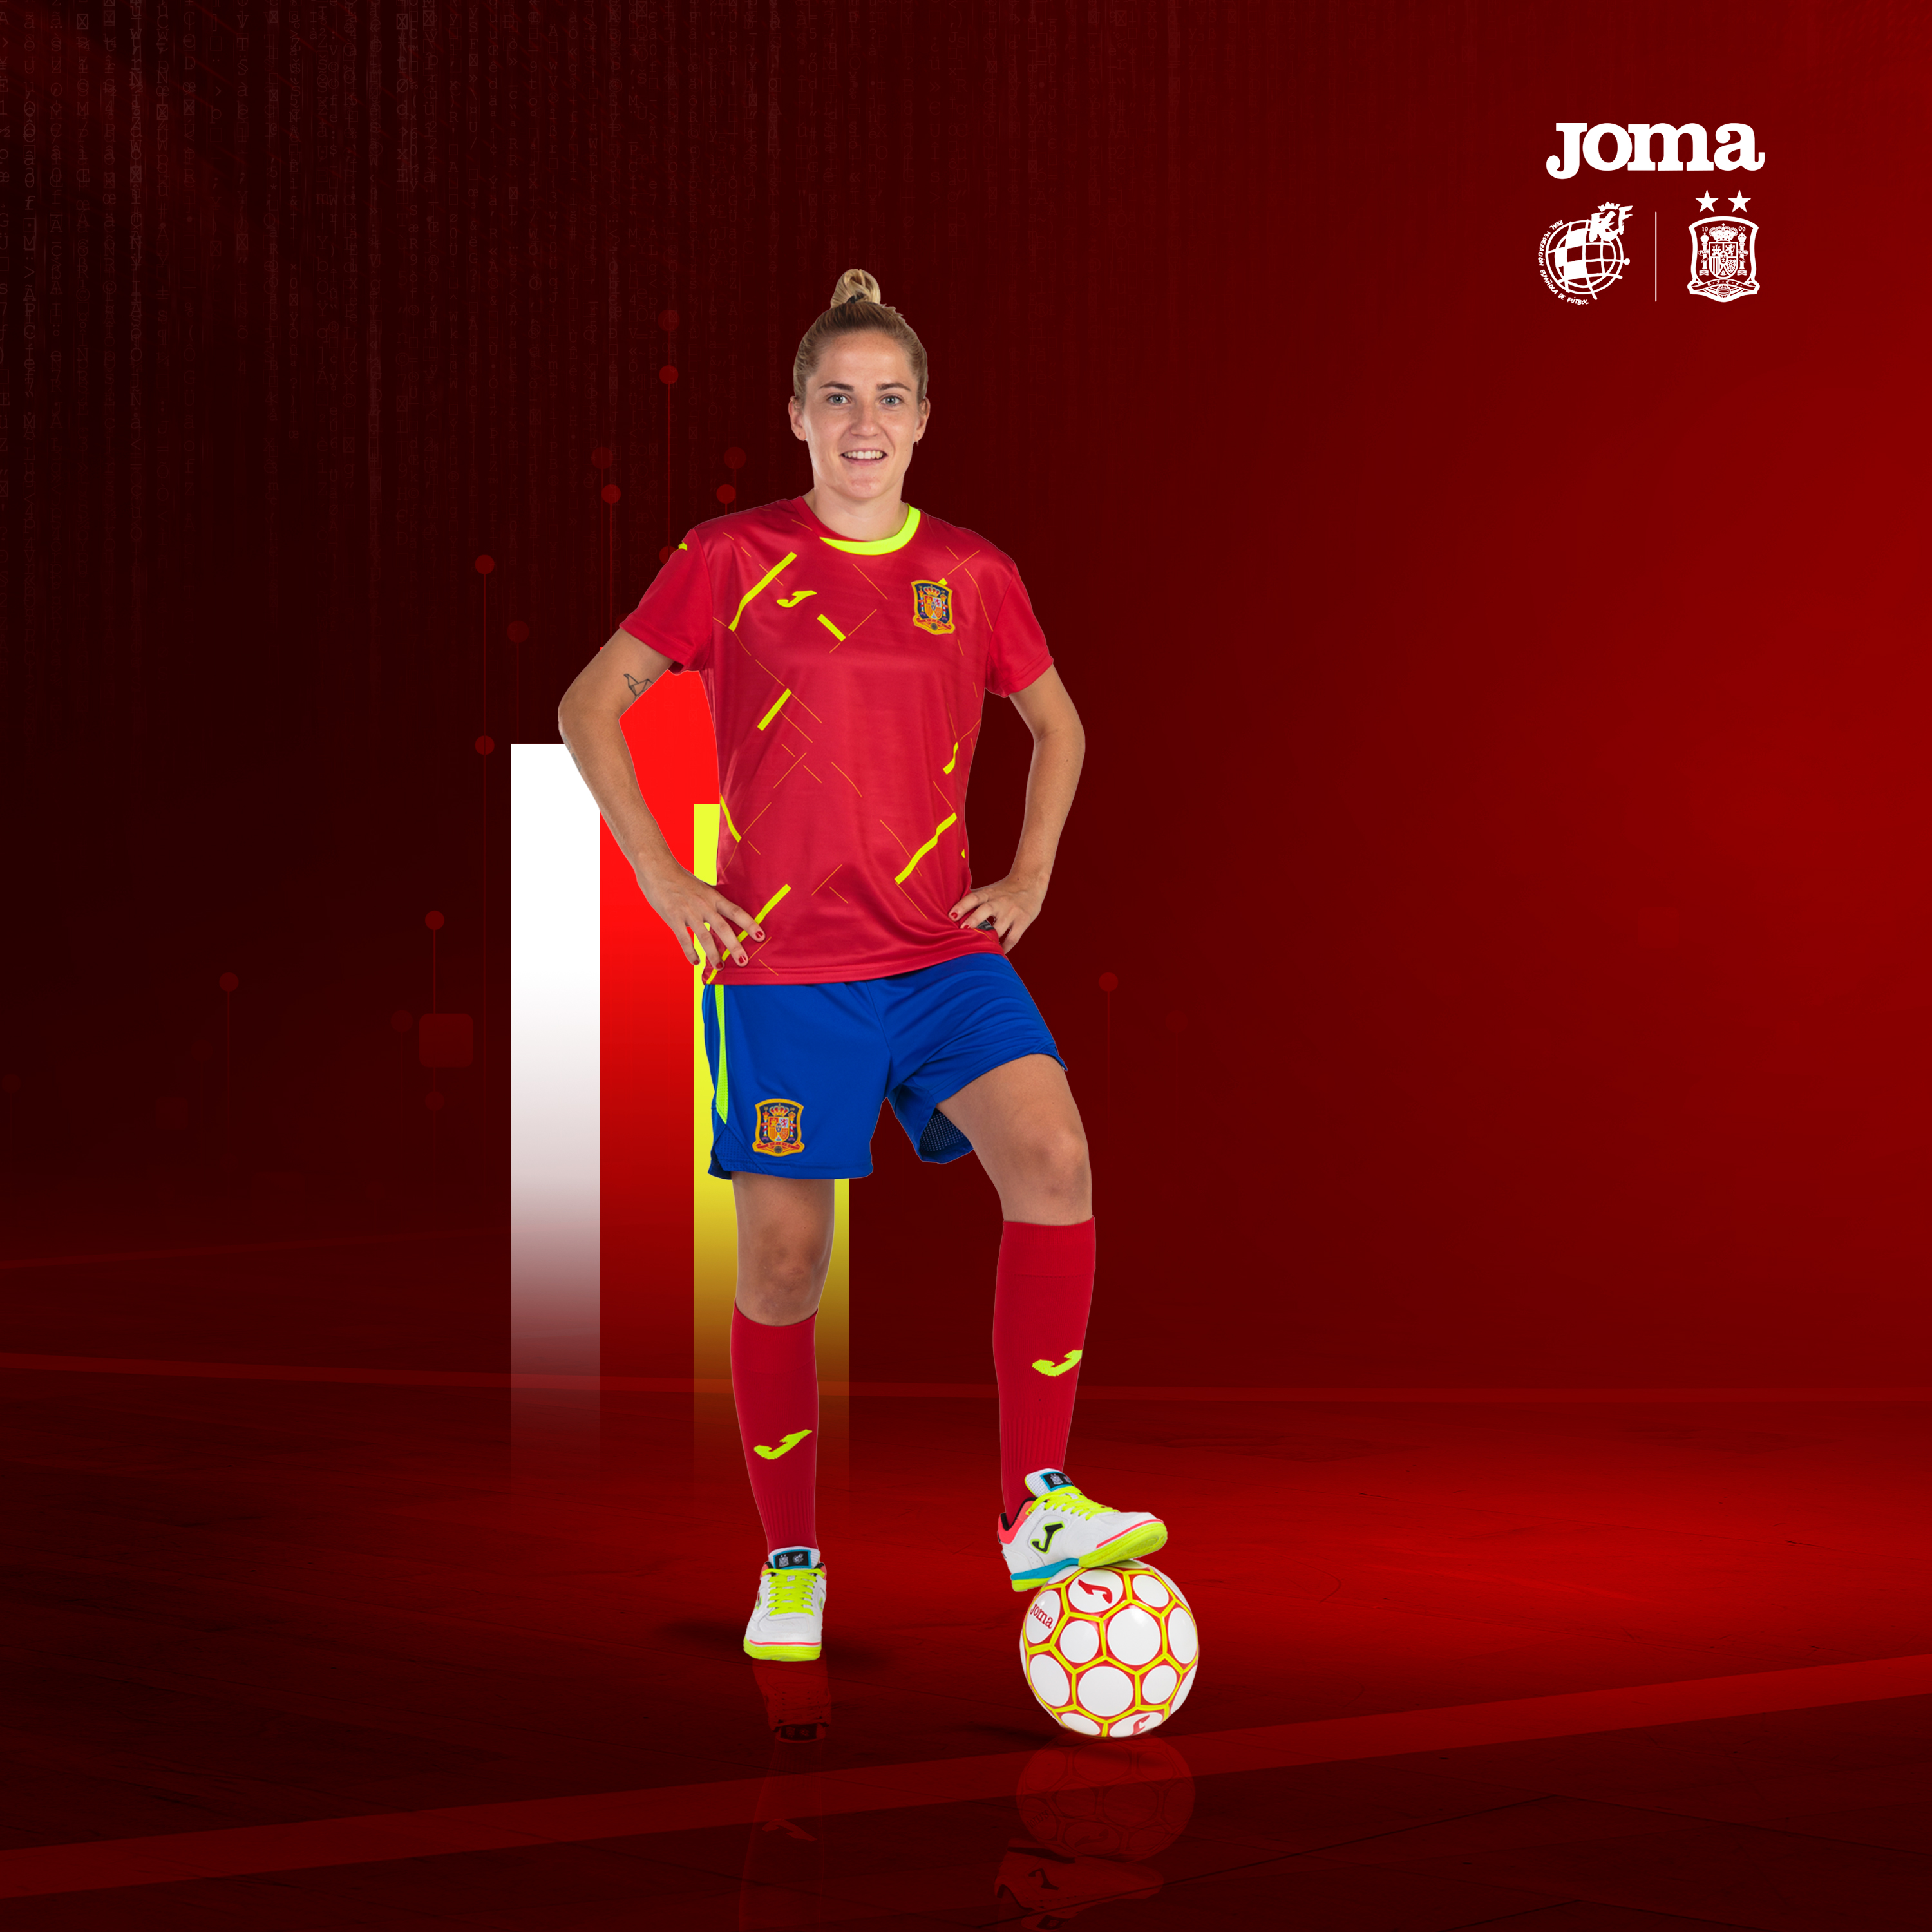 Joma Sport on Twitter: "🔝 Solo la marca que entiende el #futsal vestir a la Selección Española #SomosFutsal #SomosFederación #SoloporDeporte https://t.co/qOwxG2lbzo" / Twitter